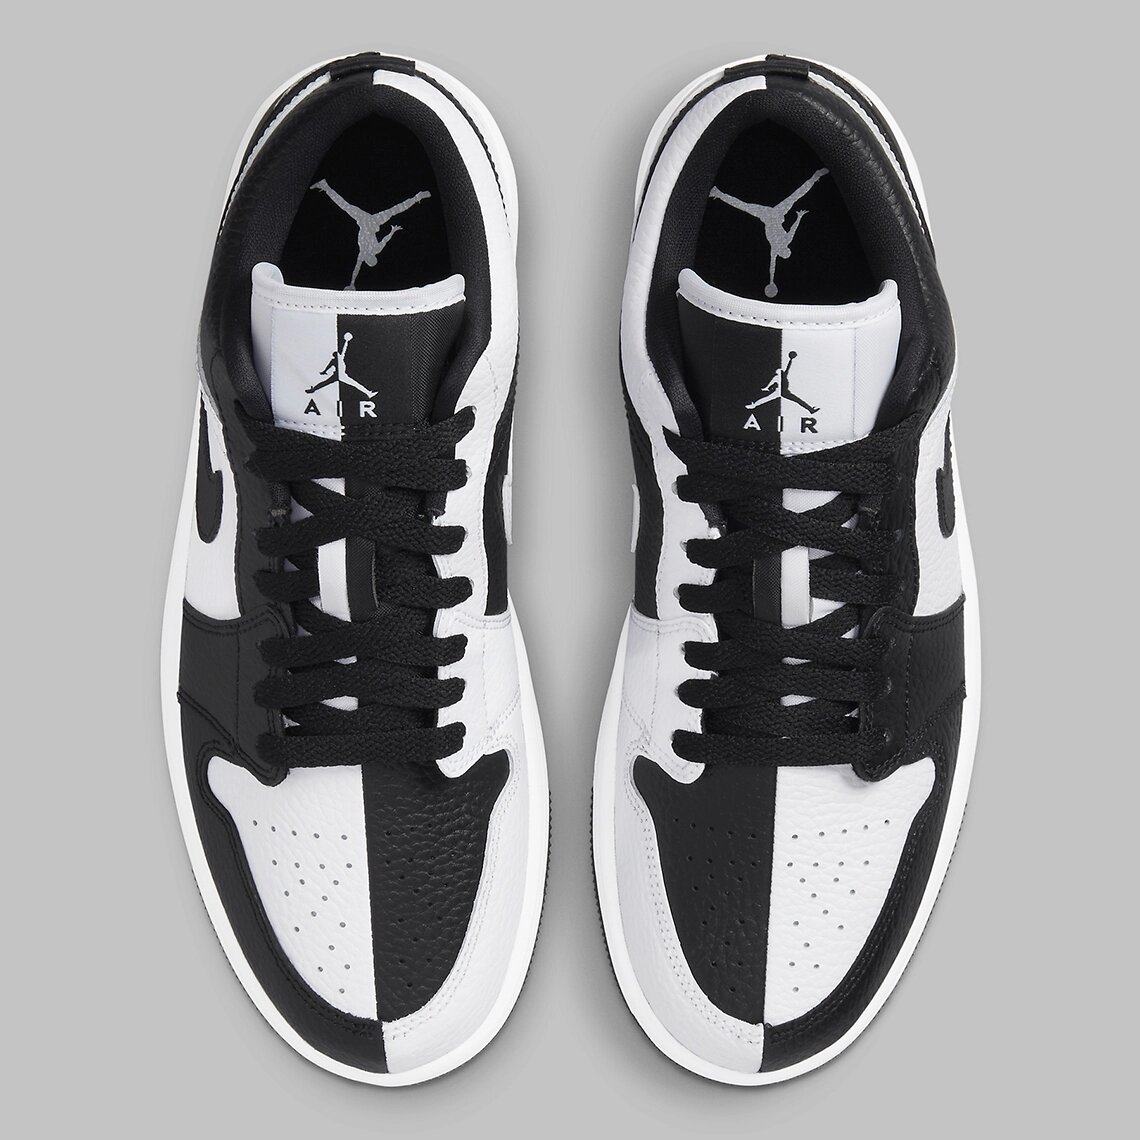 Groseramente conocido valores 🥇 AIR JORDAN 1 Low "Homage" | blanco y negro| zapatillasysneakers.com